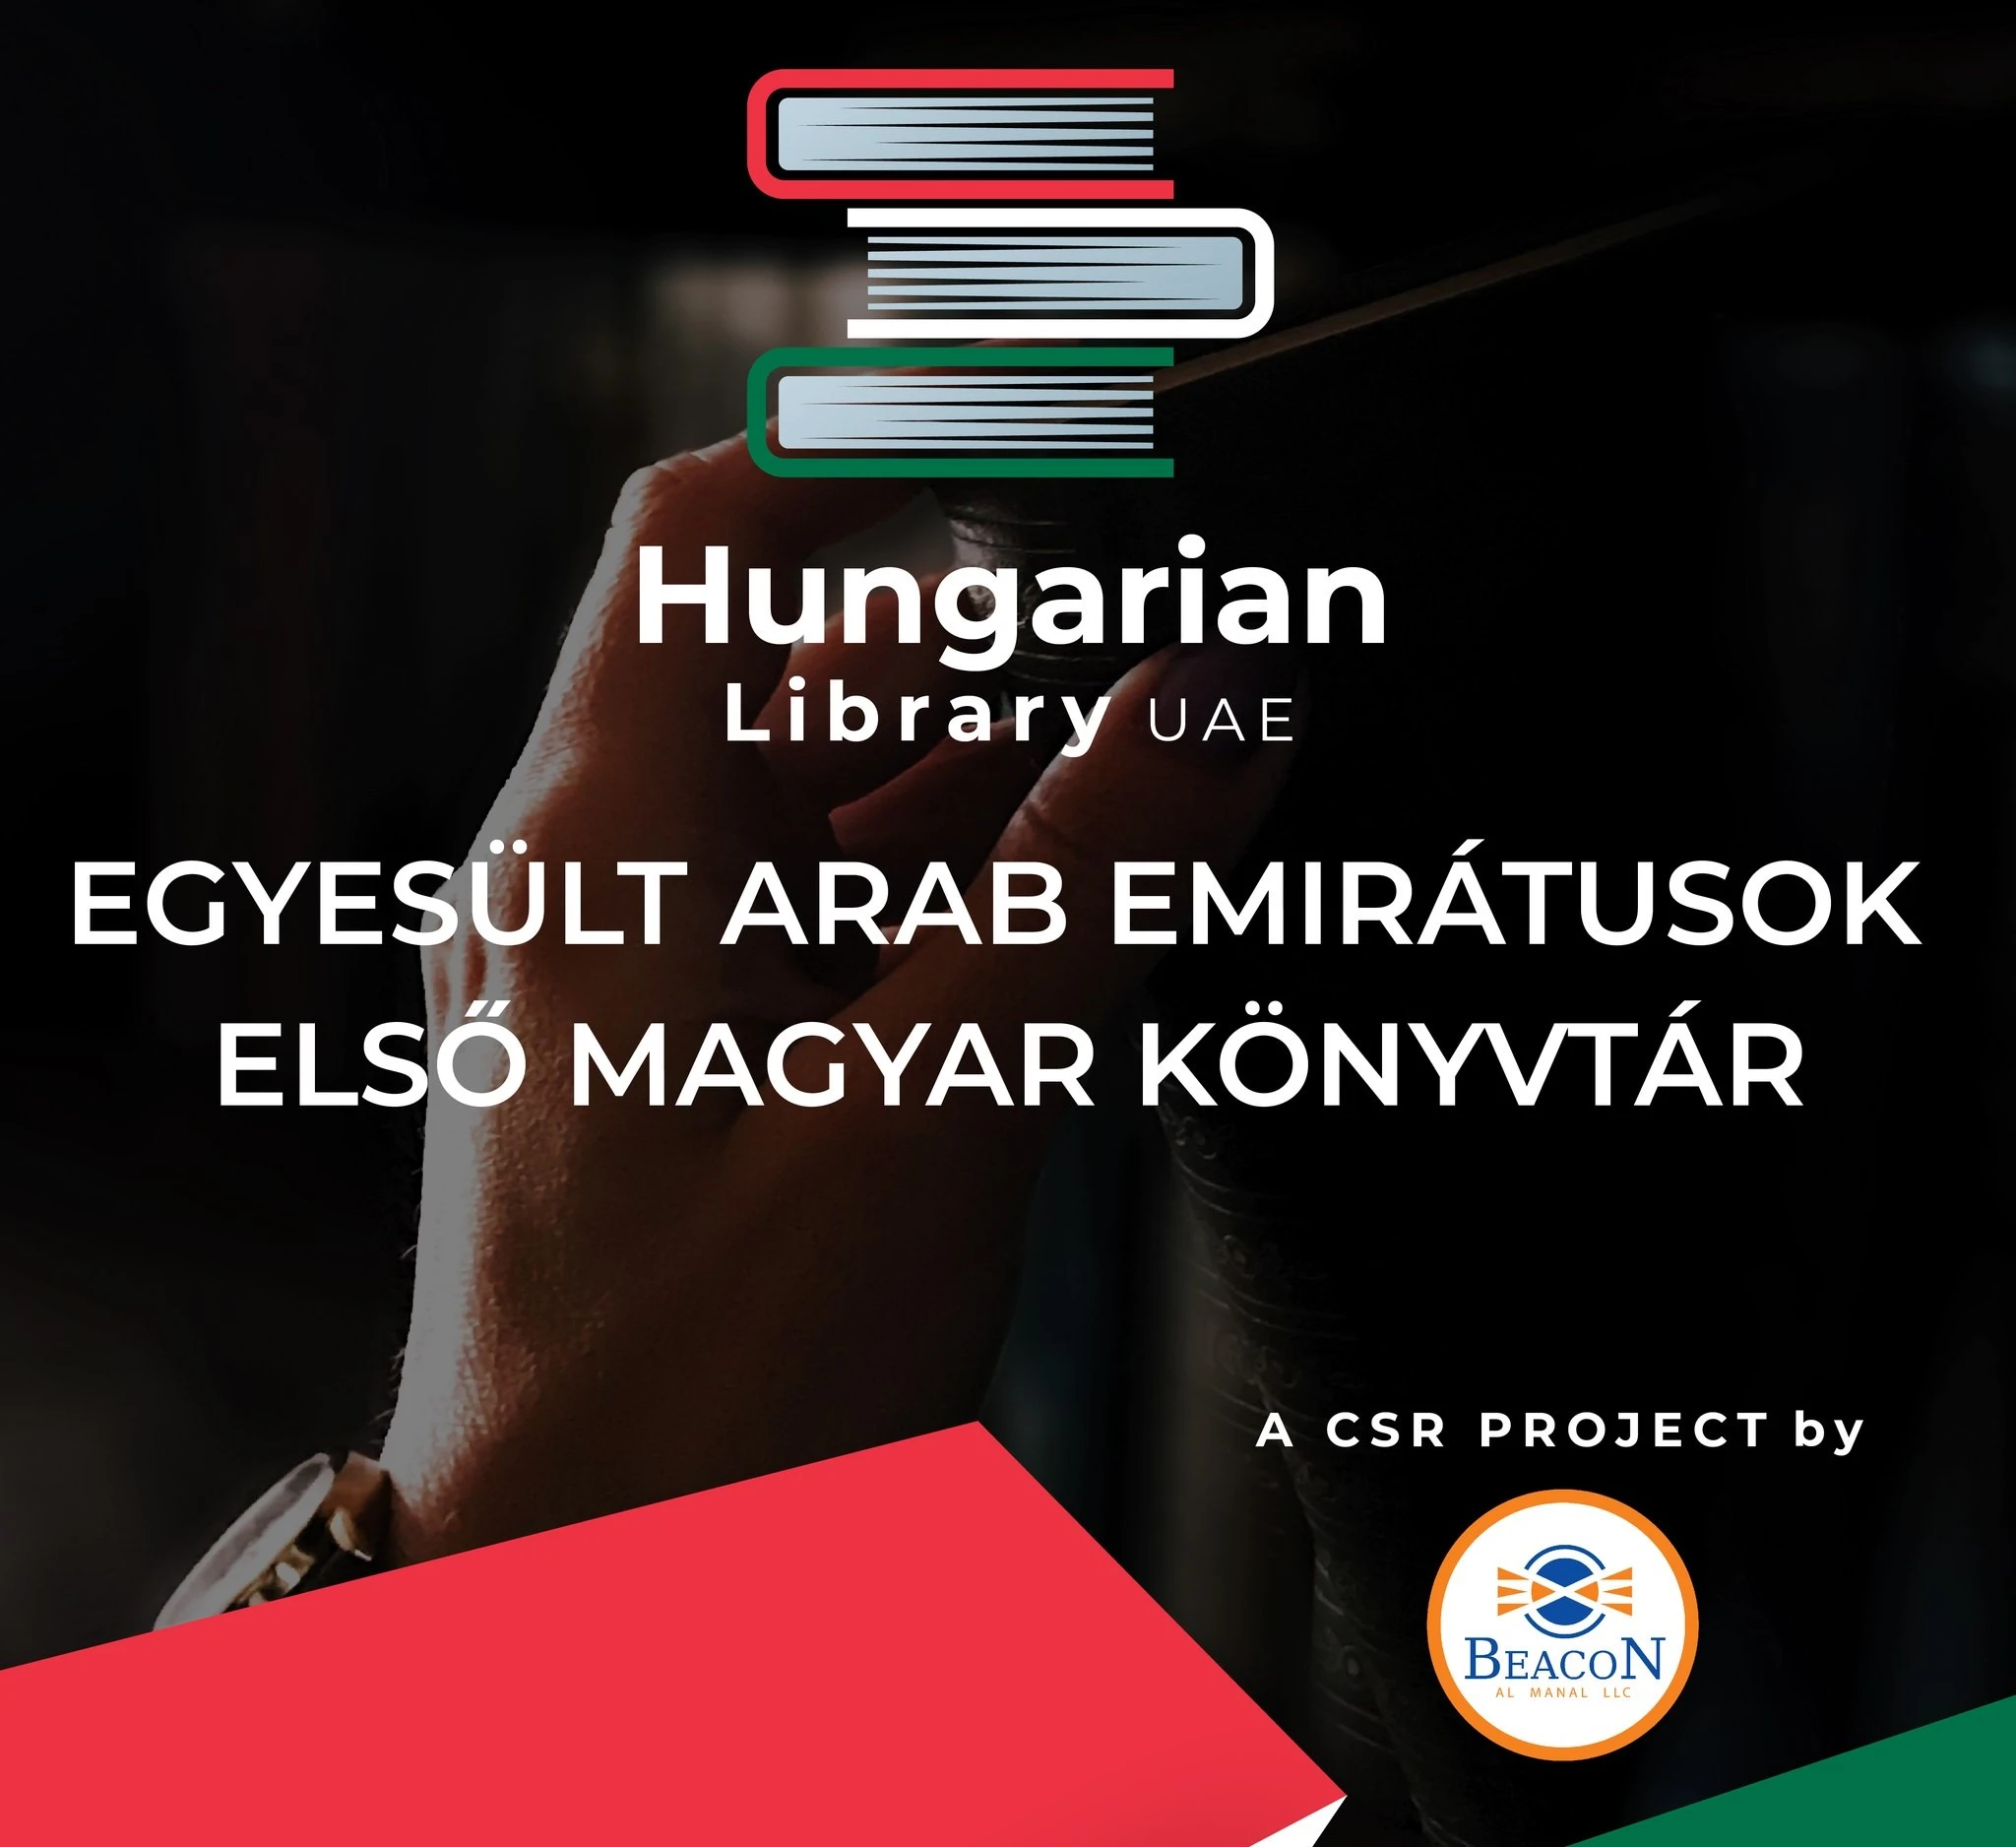 بالفيديو والصور: افتتاح مكتبة مجرية في الإمارات